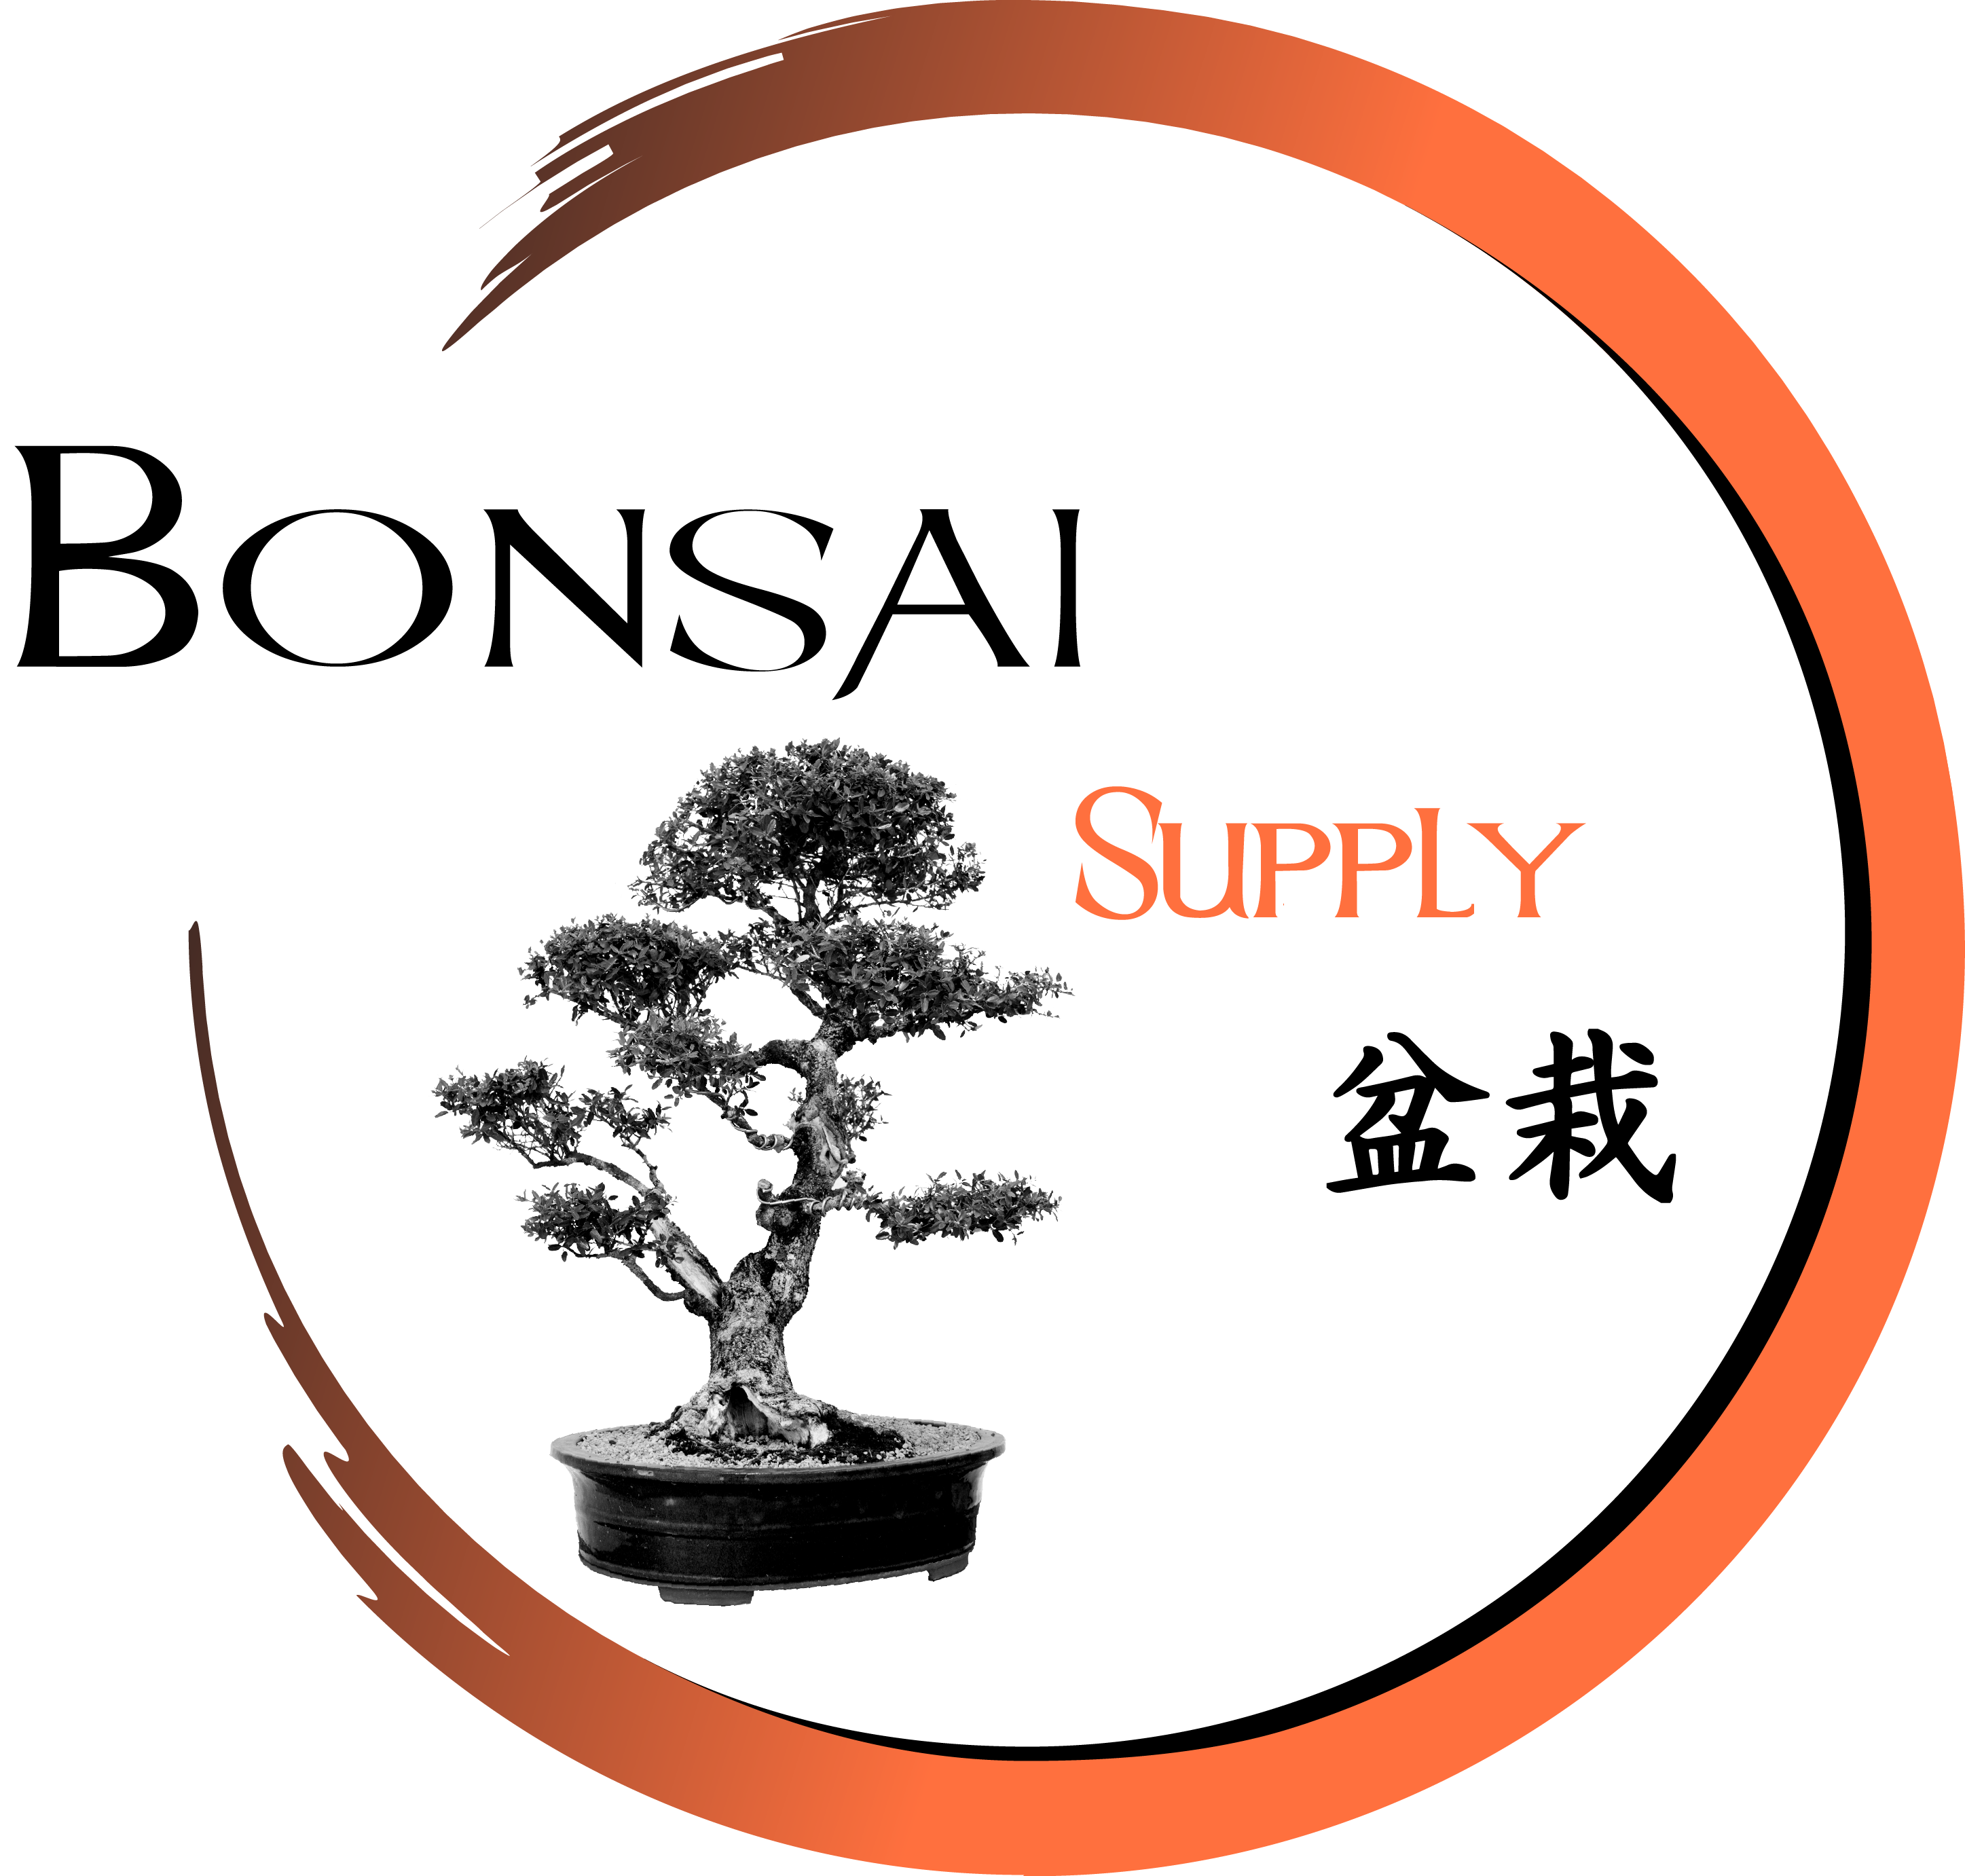 The Bonsai Supply - Quality & Affordable Bonsai Supplies